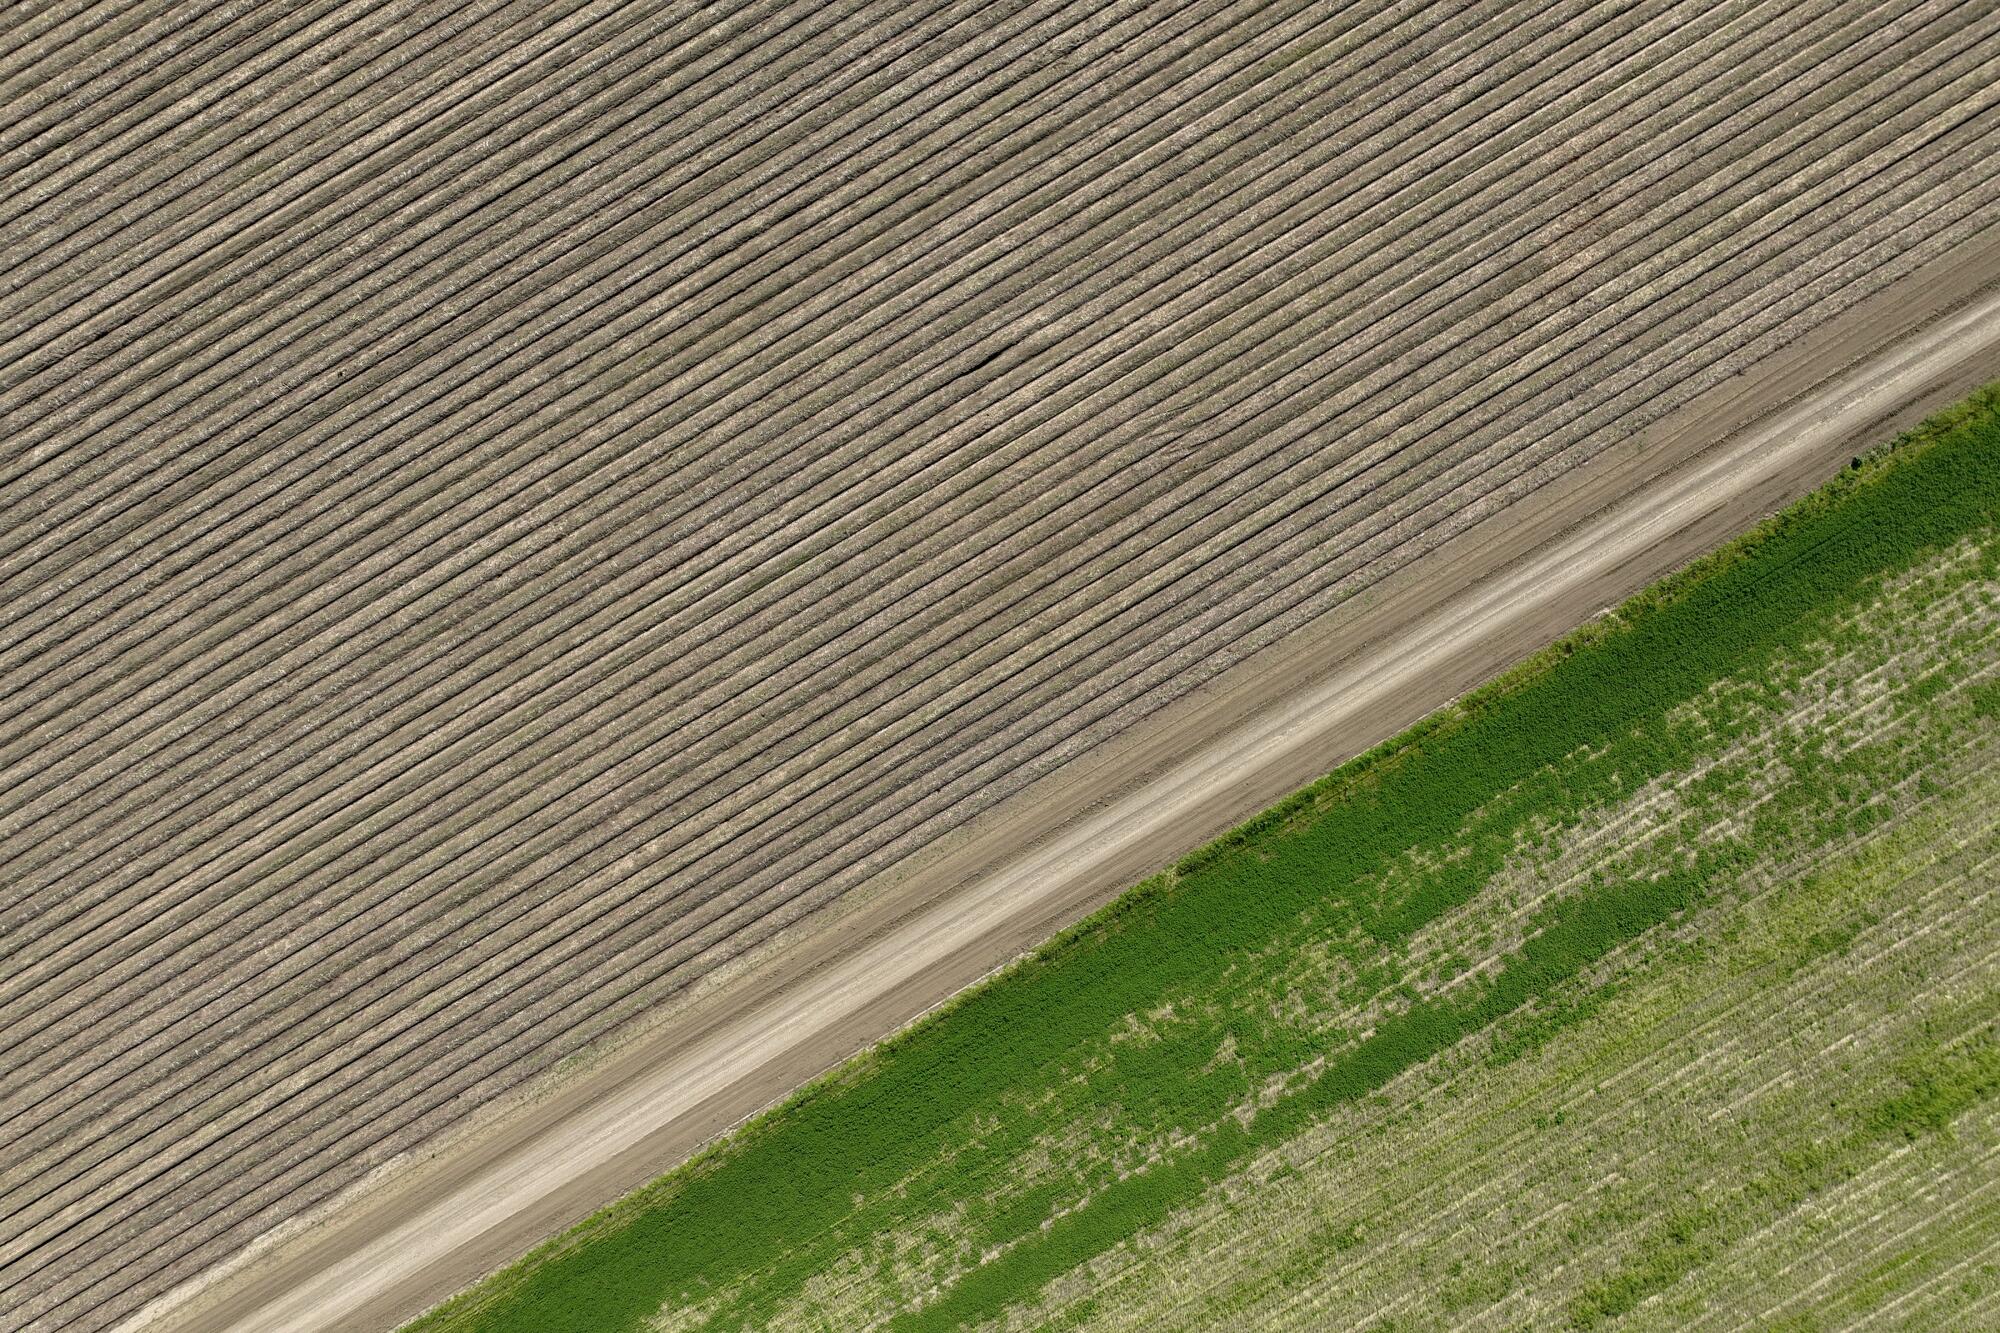 An aerial view of an asparagus field. 